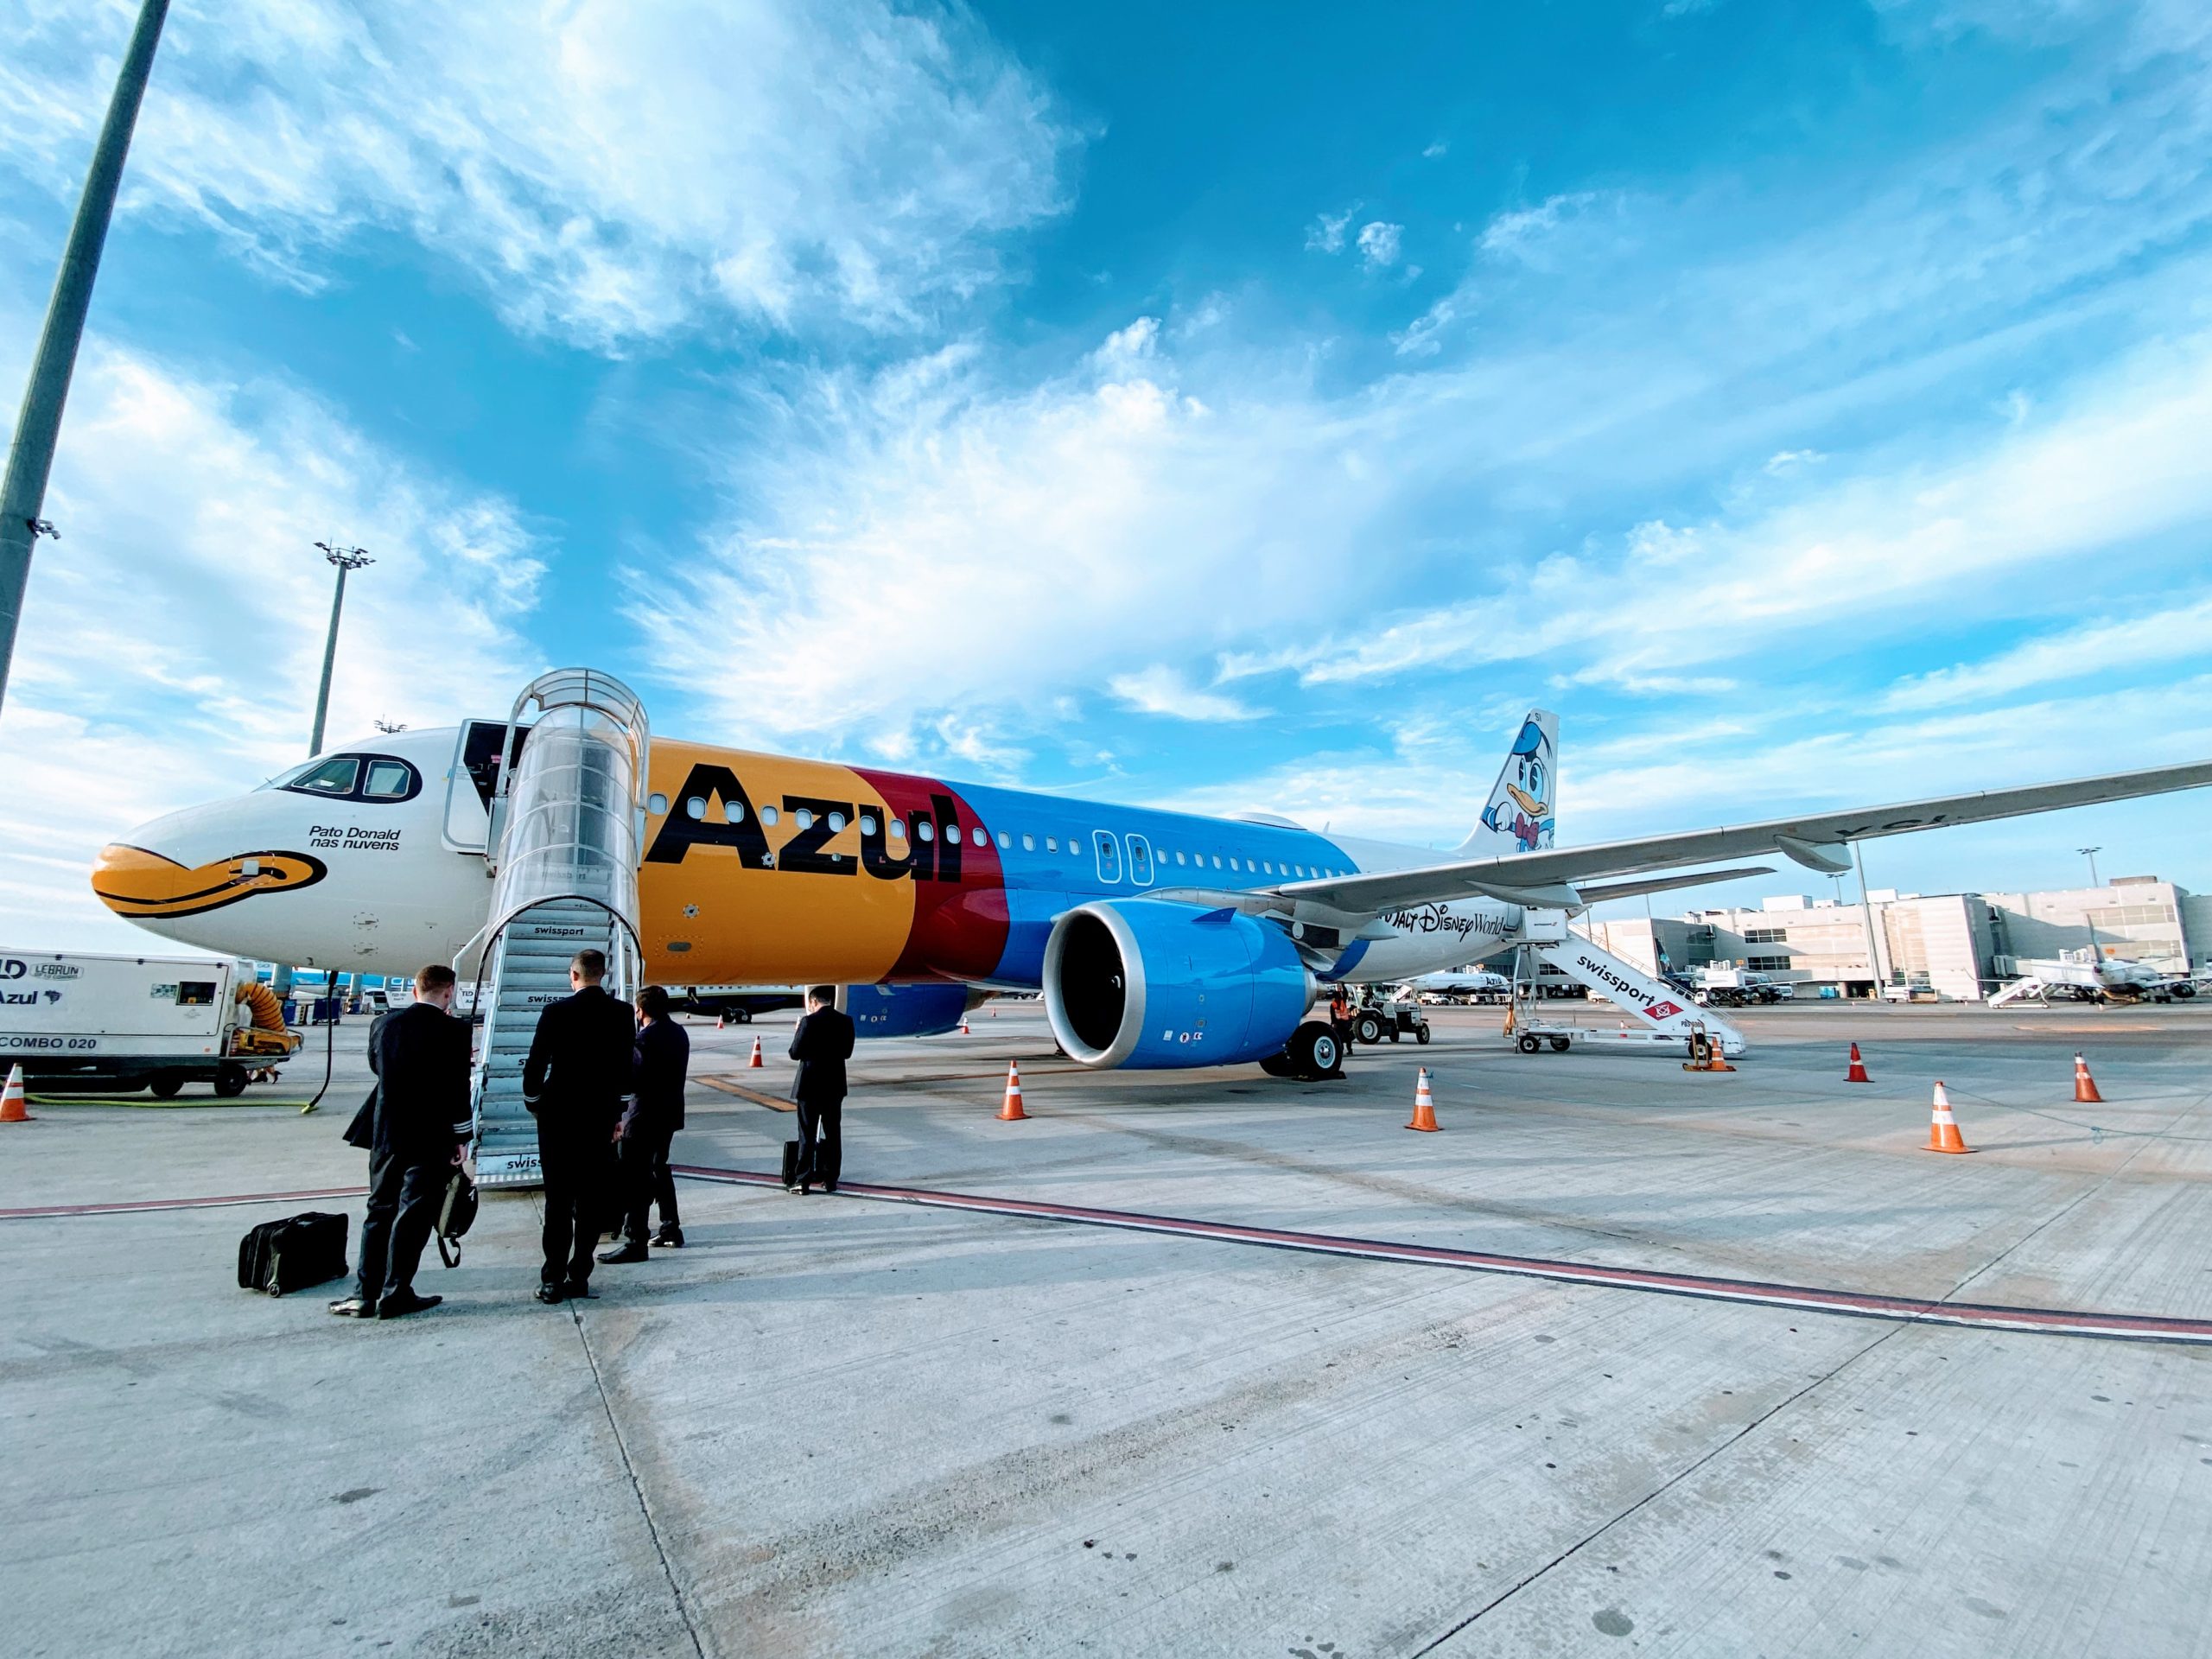 Disney no Brasil: avião da Azul com Margarida completa a frota